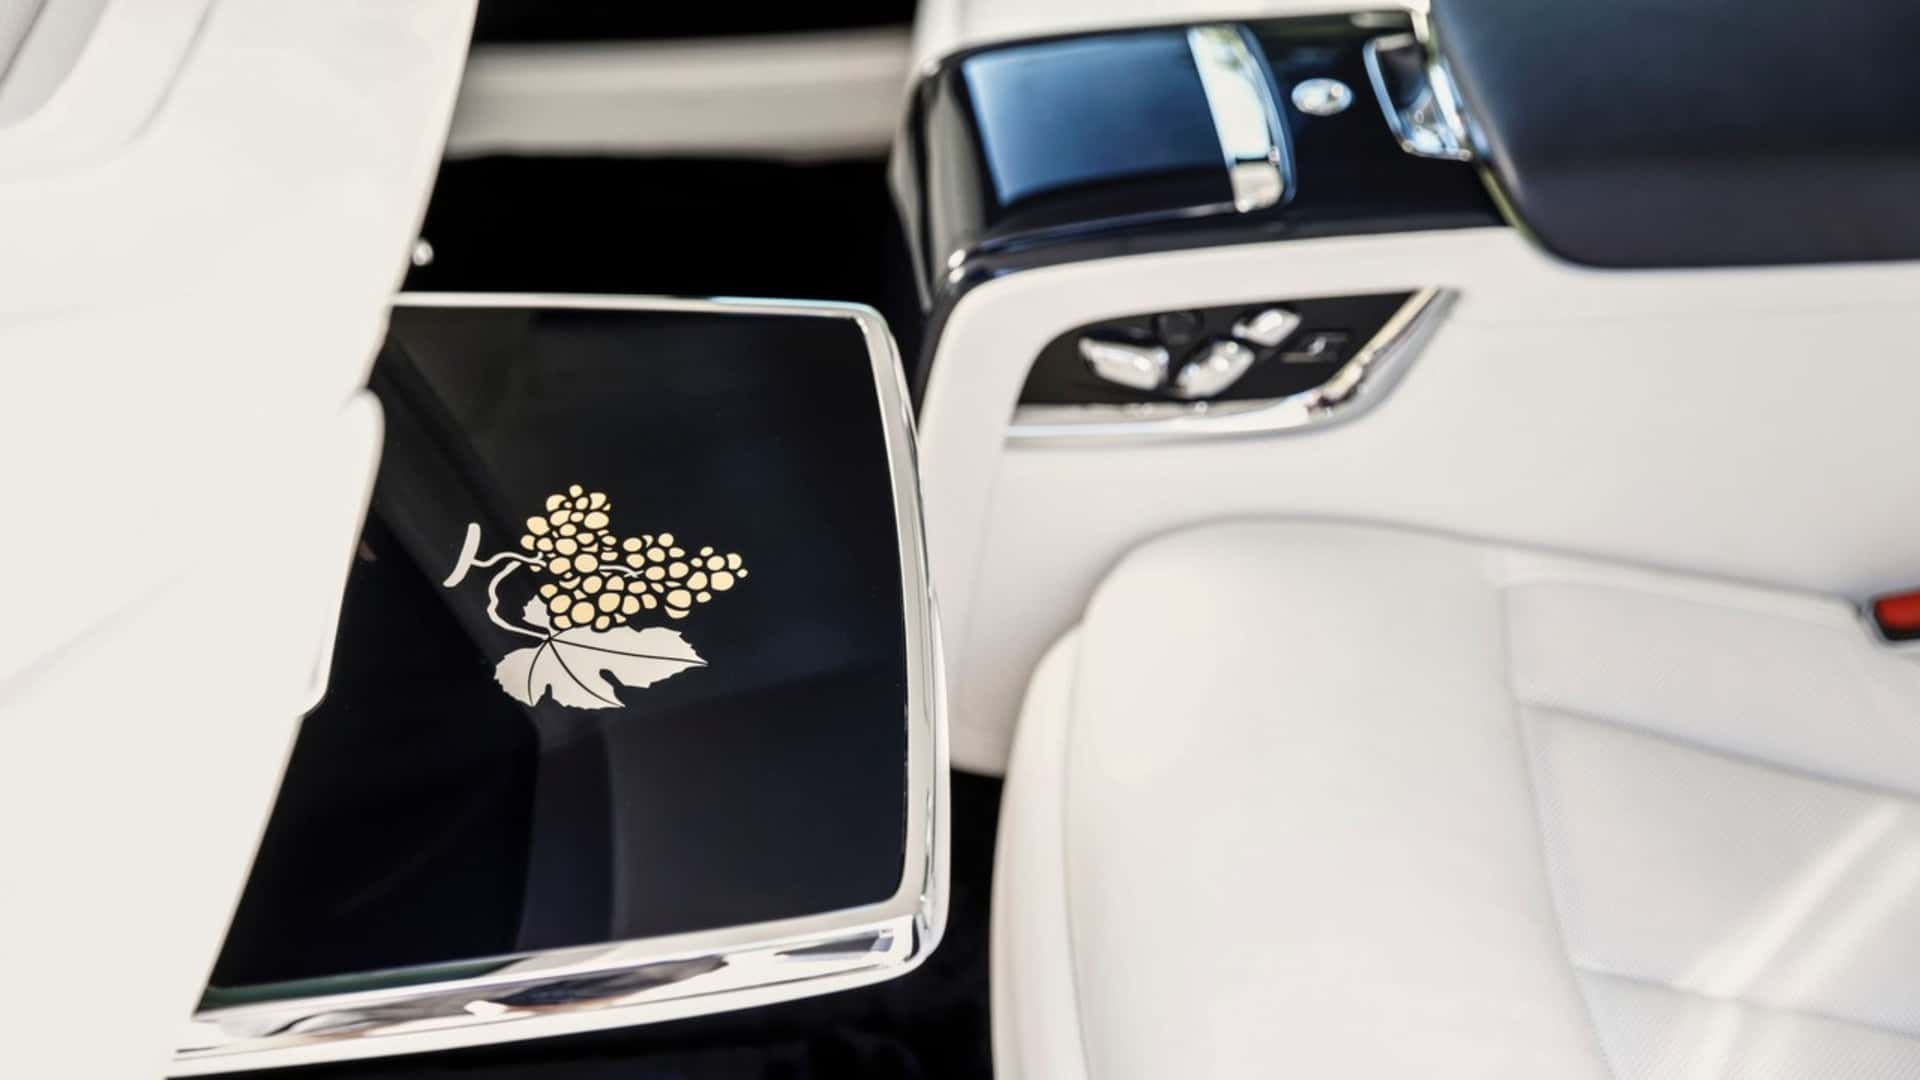 Rolls-Royce Phantom lấy cảm hứng từ những làng chài cổ tích